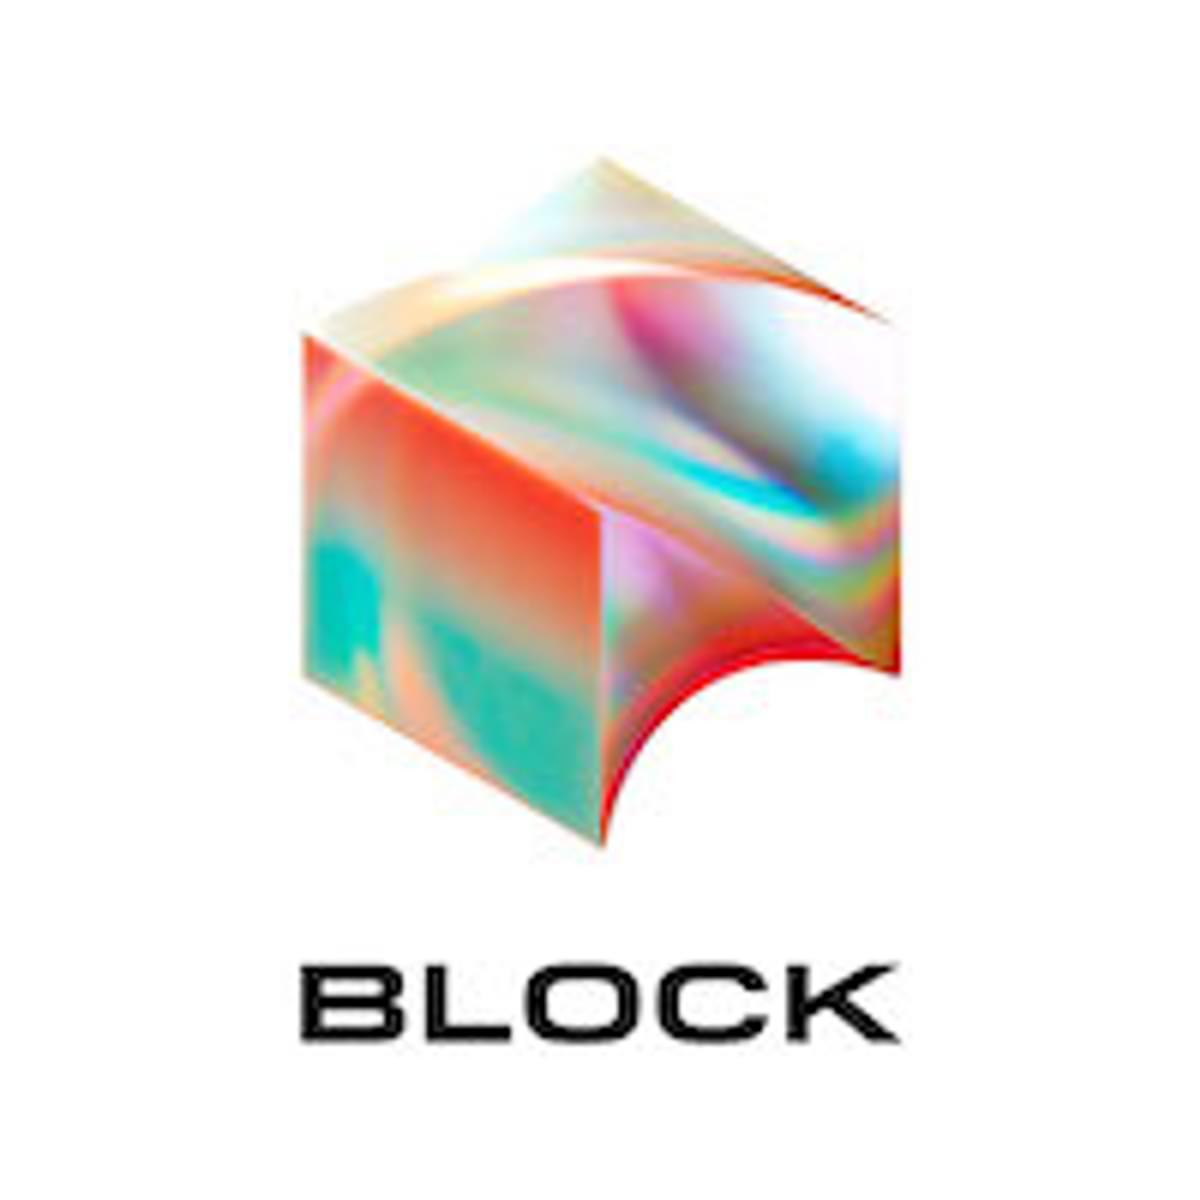 Fintechbedrijf Square van Jack Dorsey wijzigt naam in Block image